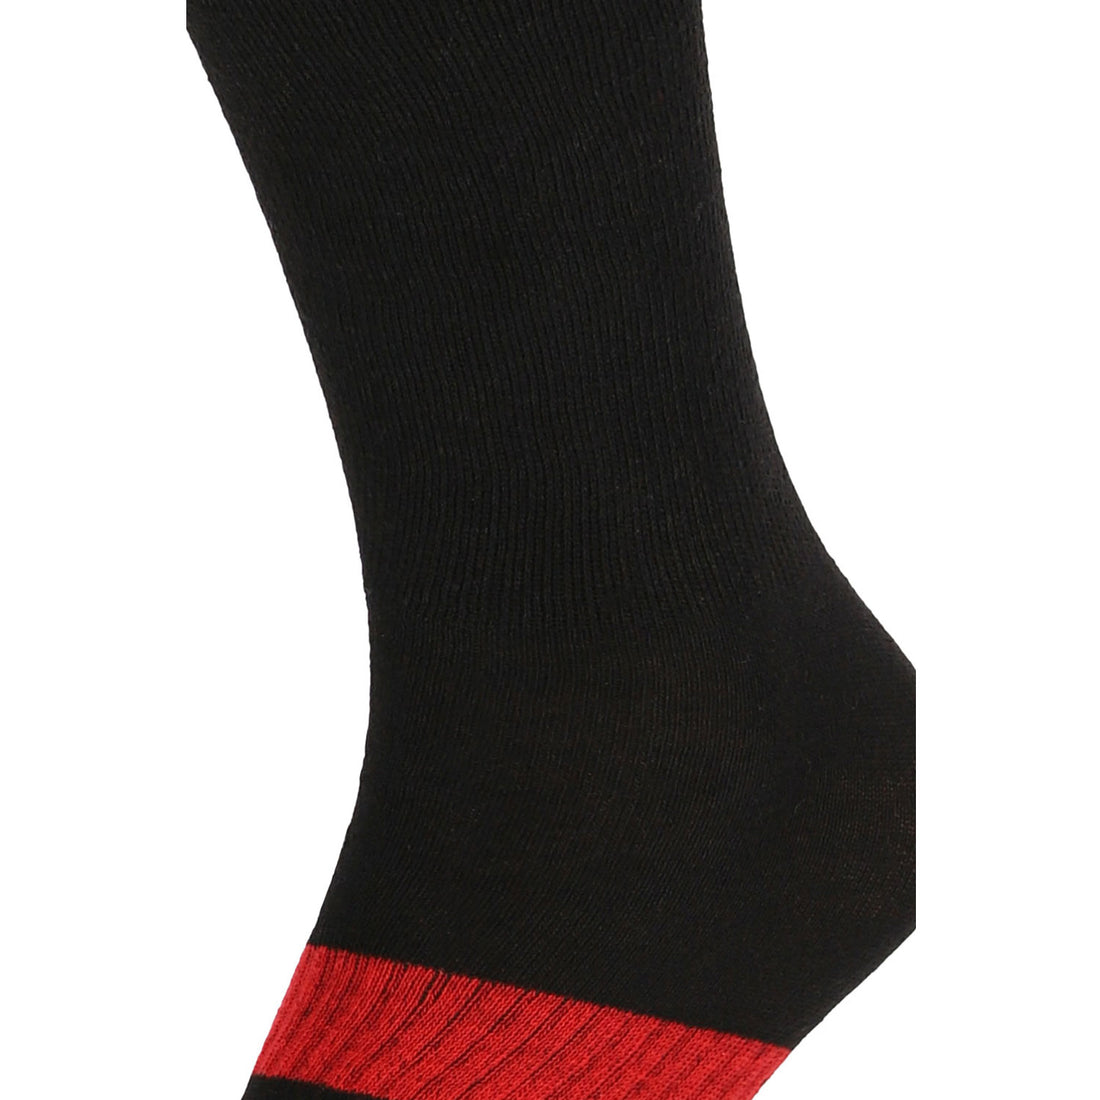 ChiliLifestyle Socken BestCare Compression Knie schwarz 2 Paar, Damen, Herren